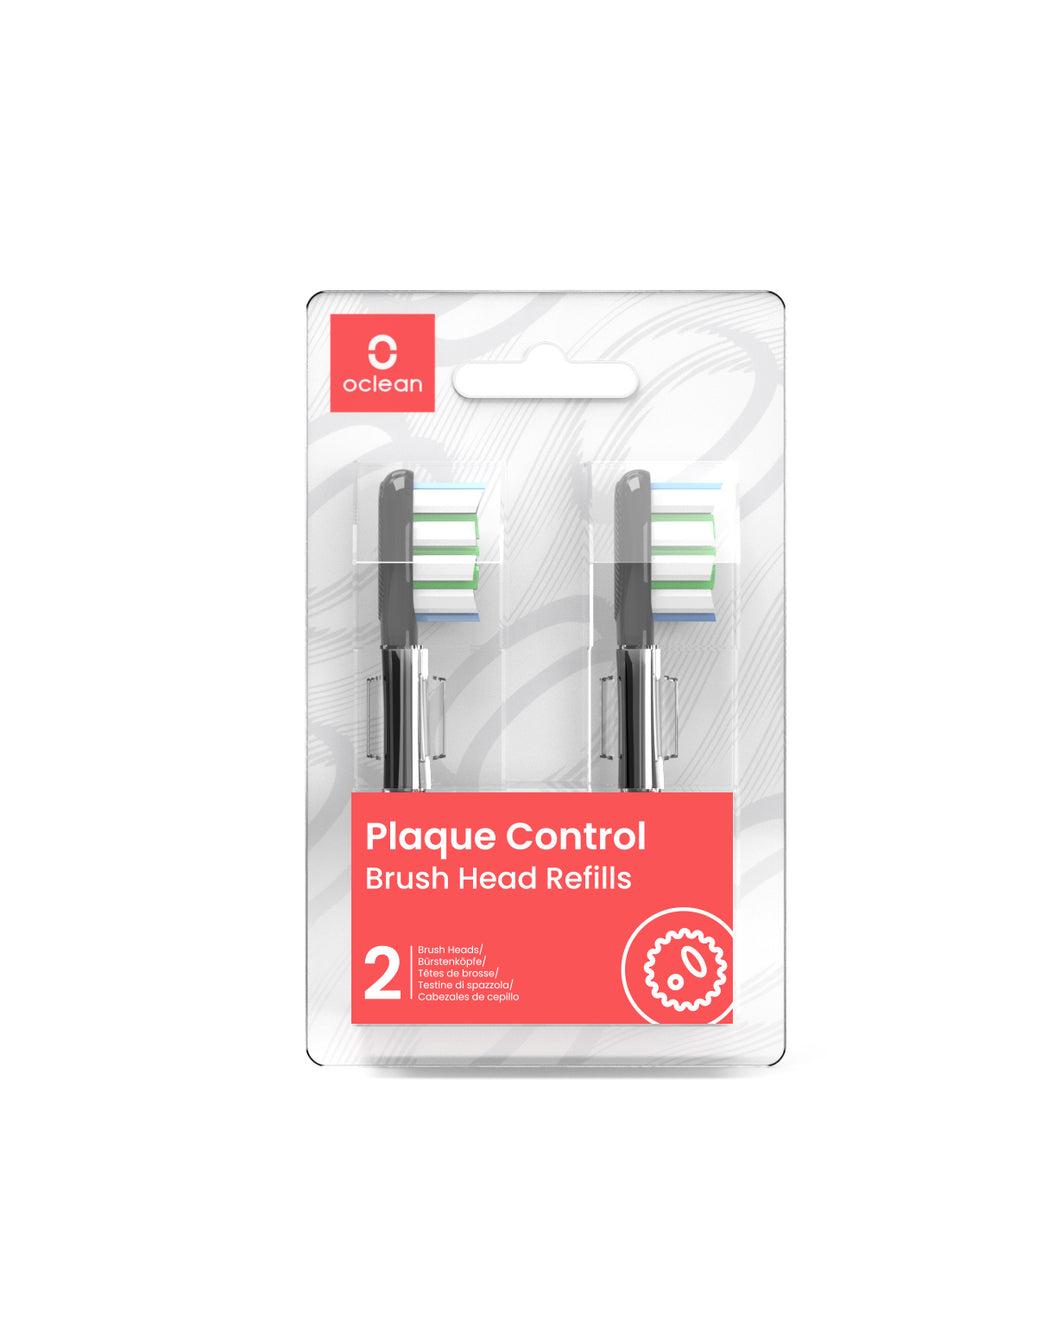 Oclean Plaque Control 2-pack